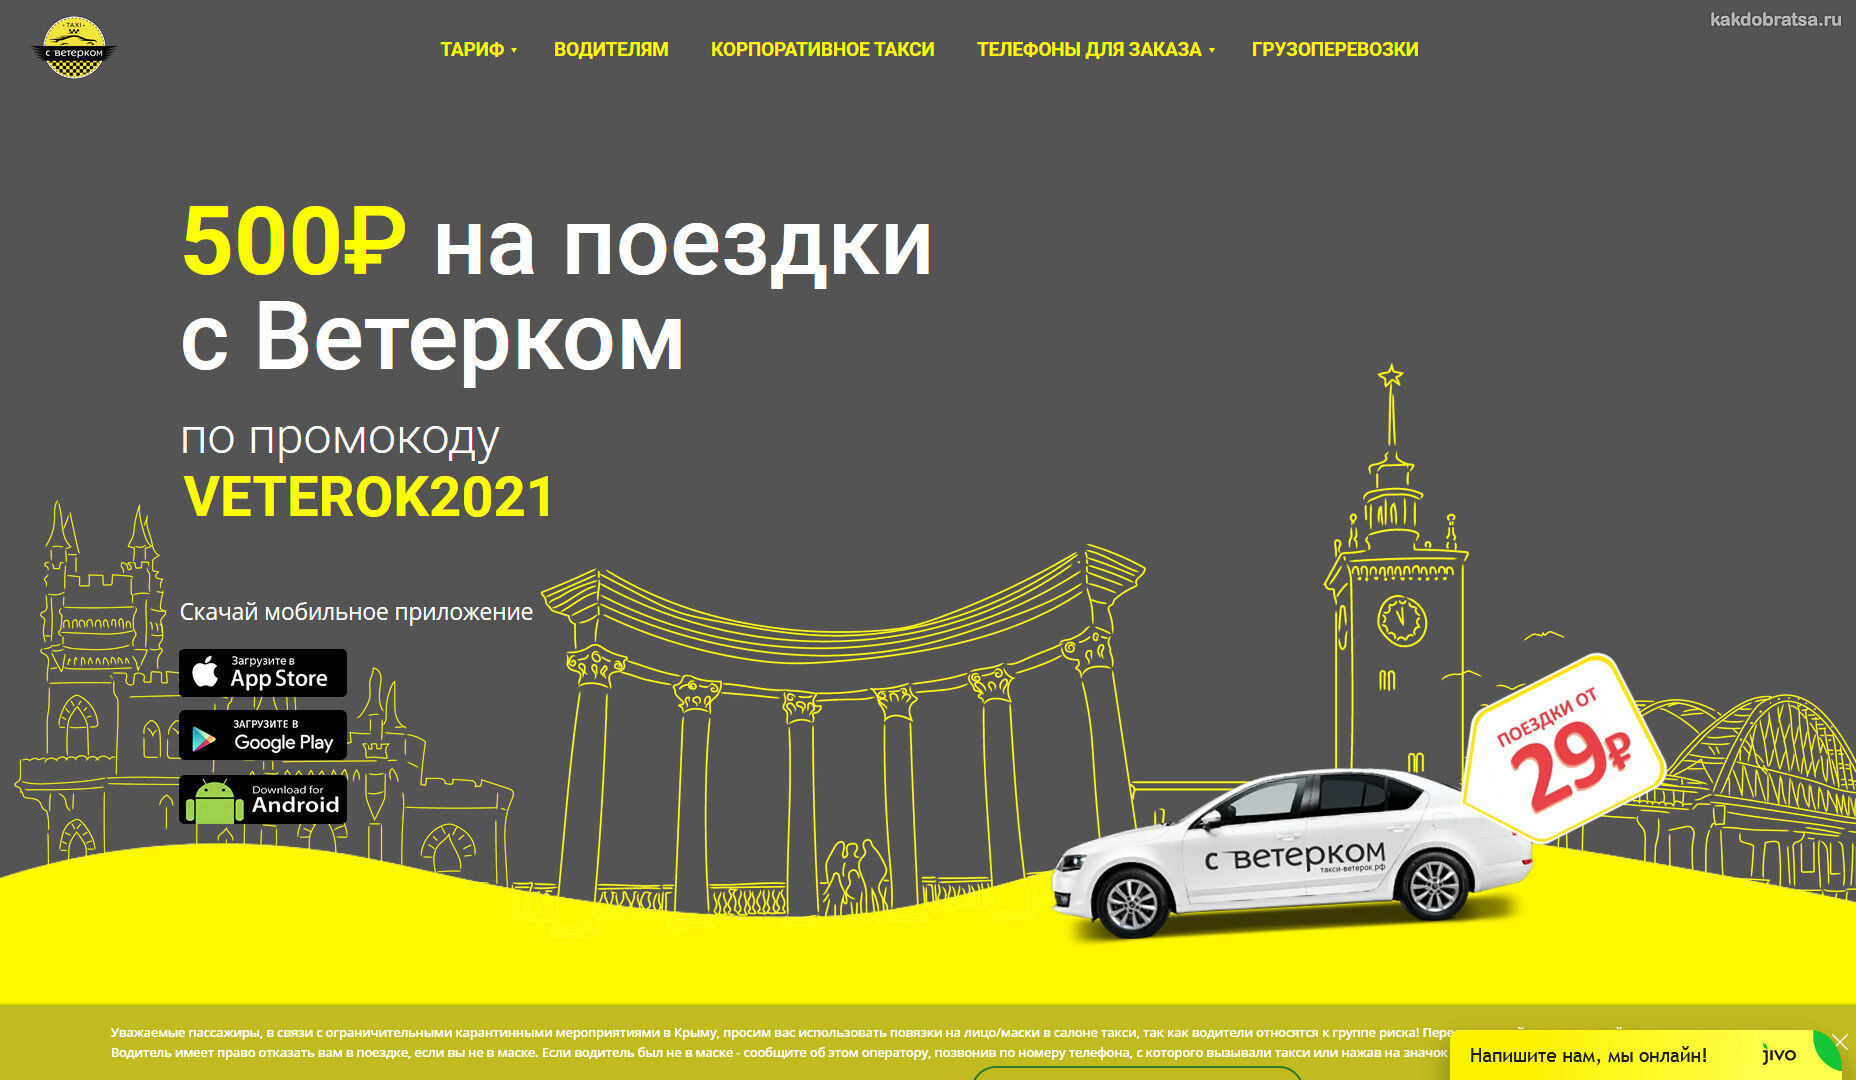 Крым стоимость проезда в такси